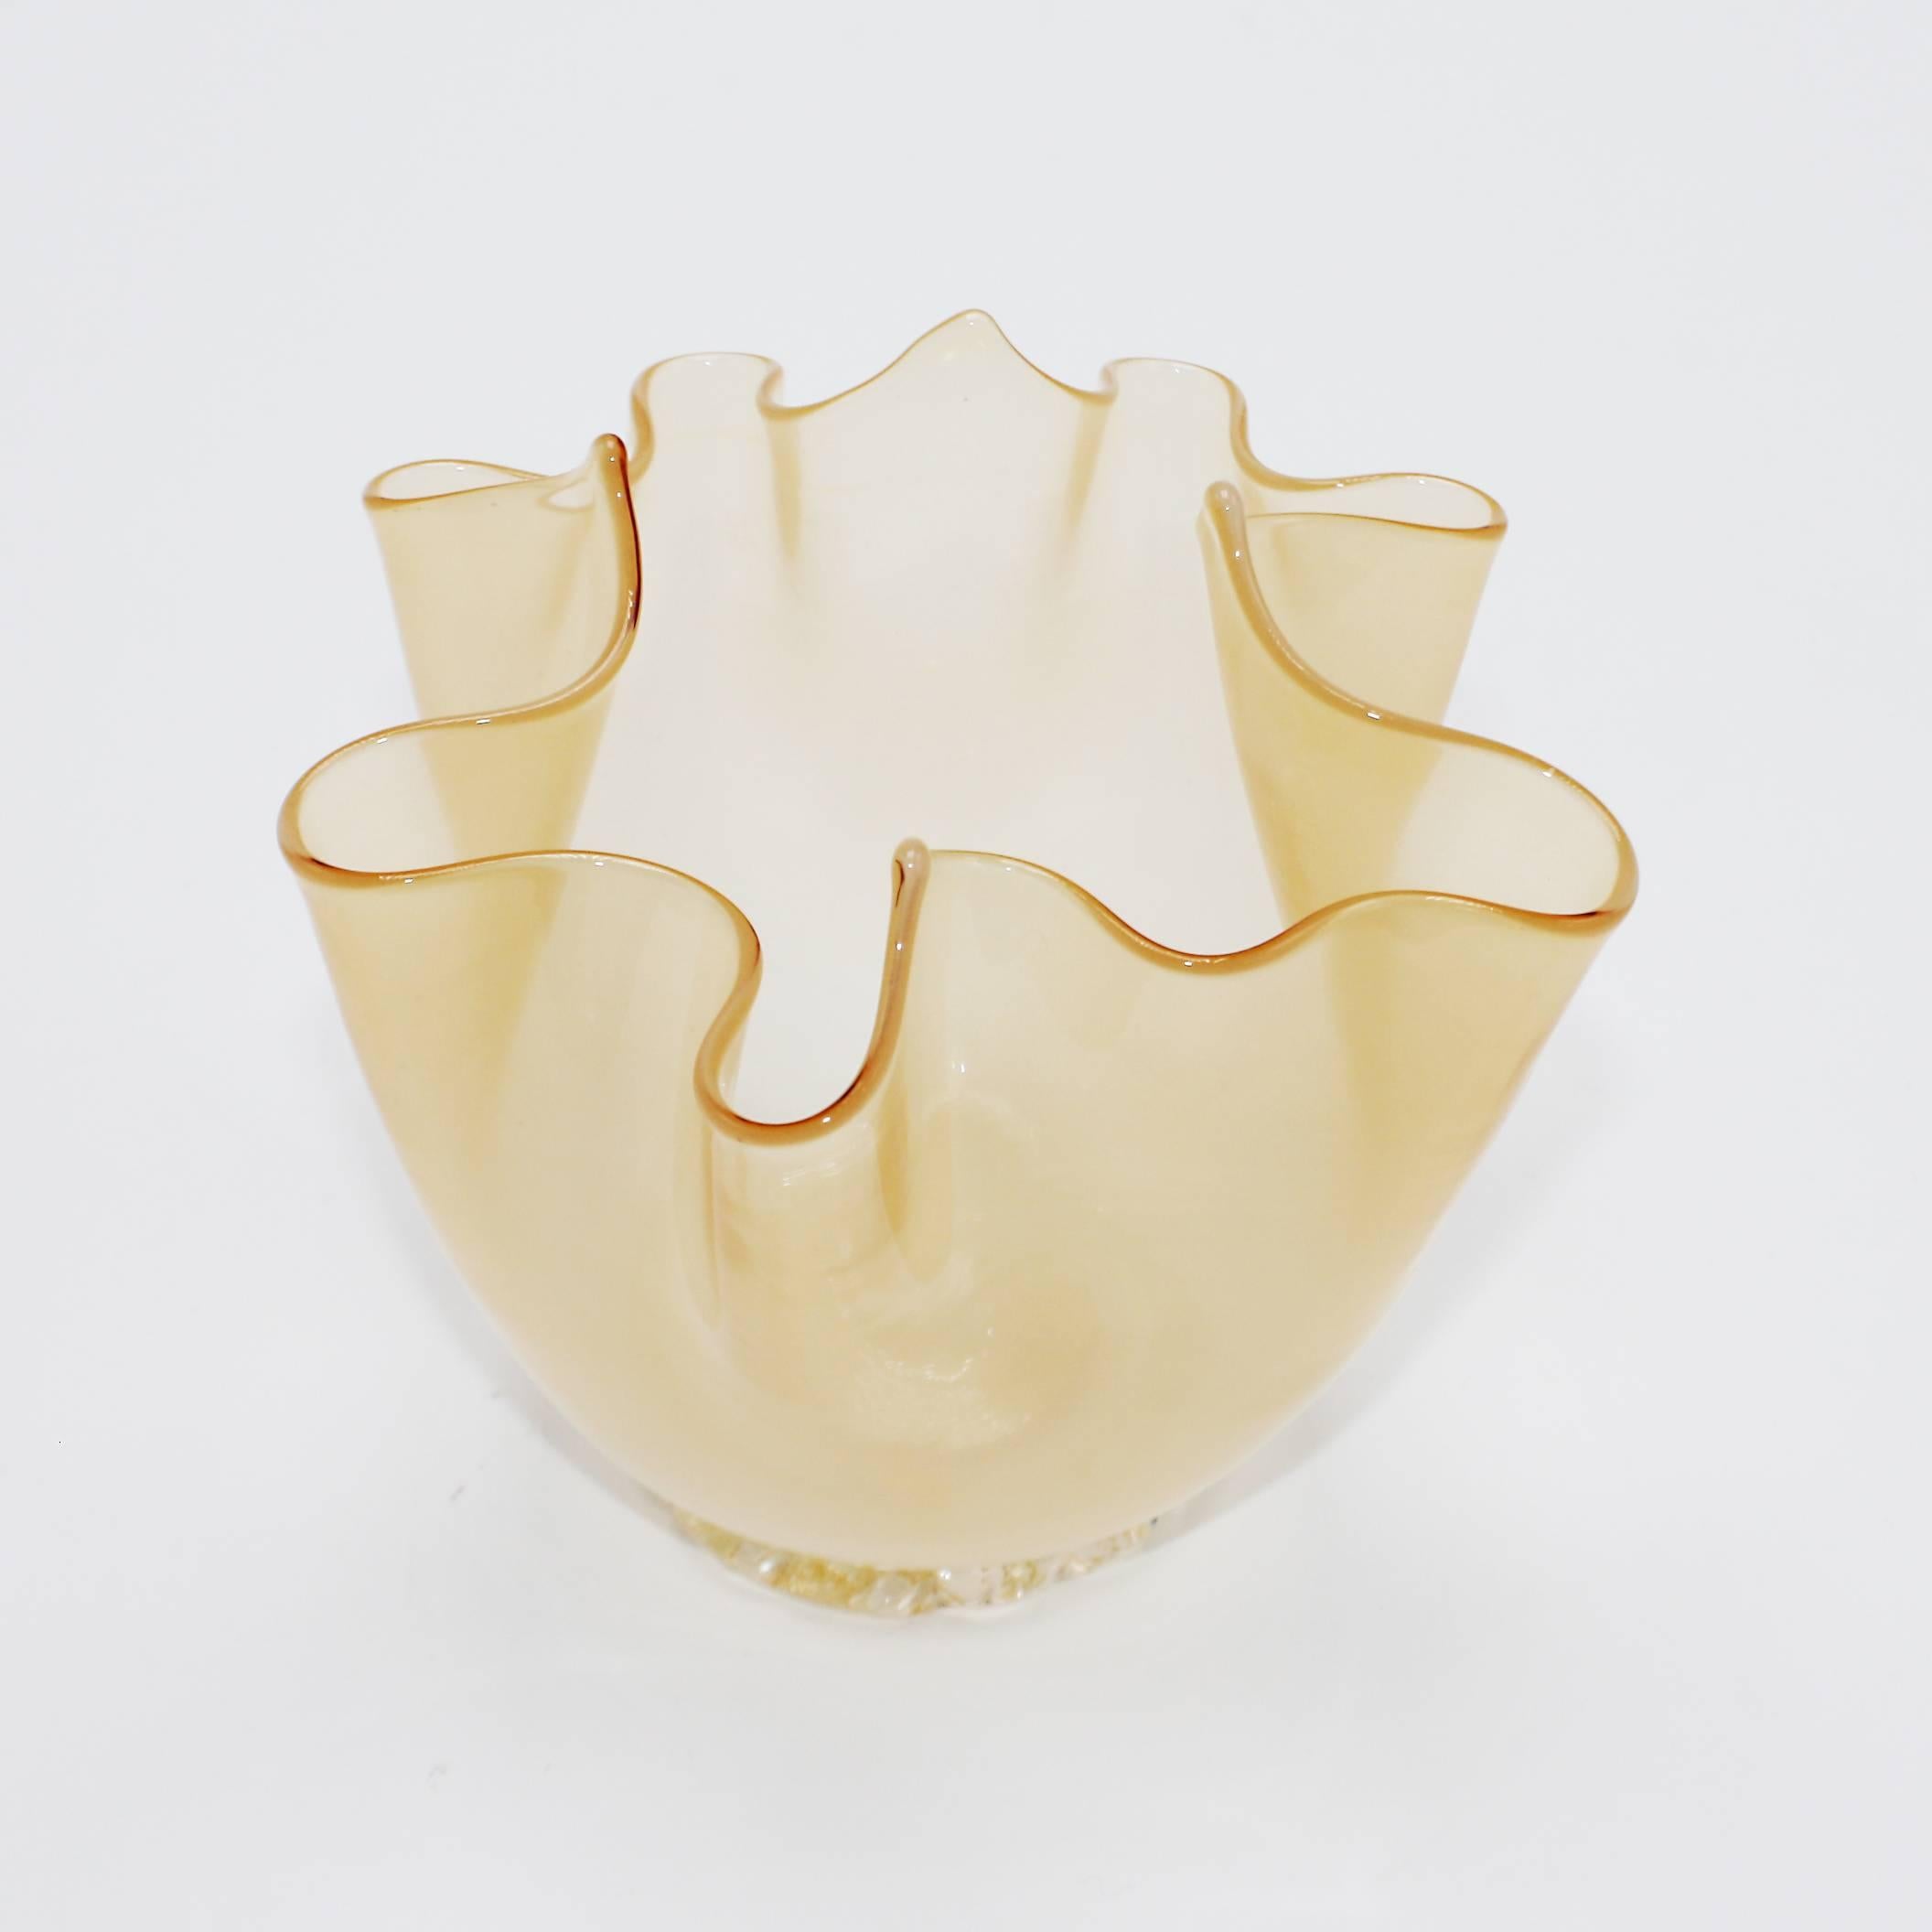 Small gold Murano glass bowl, circa 1960.